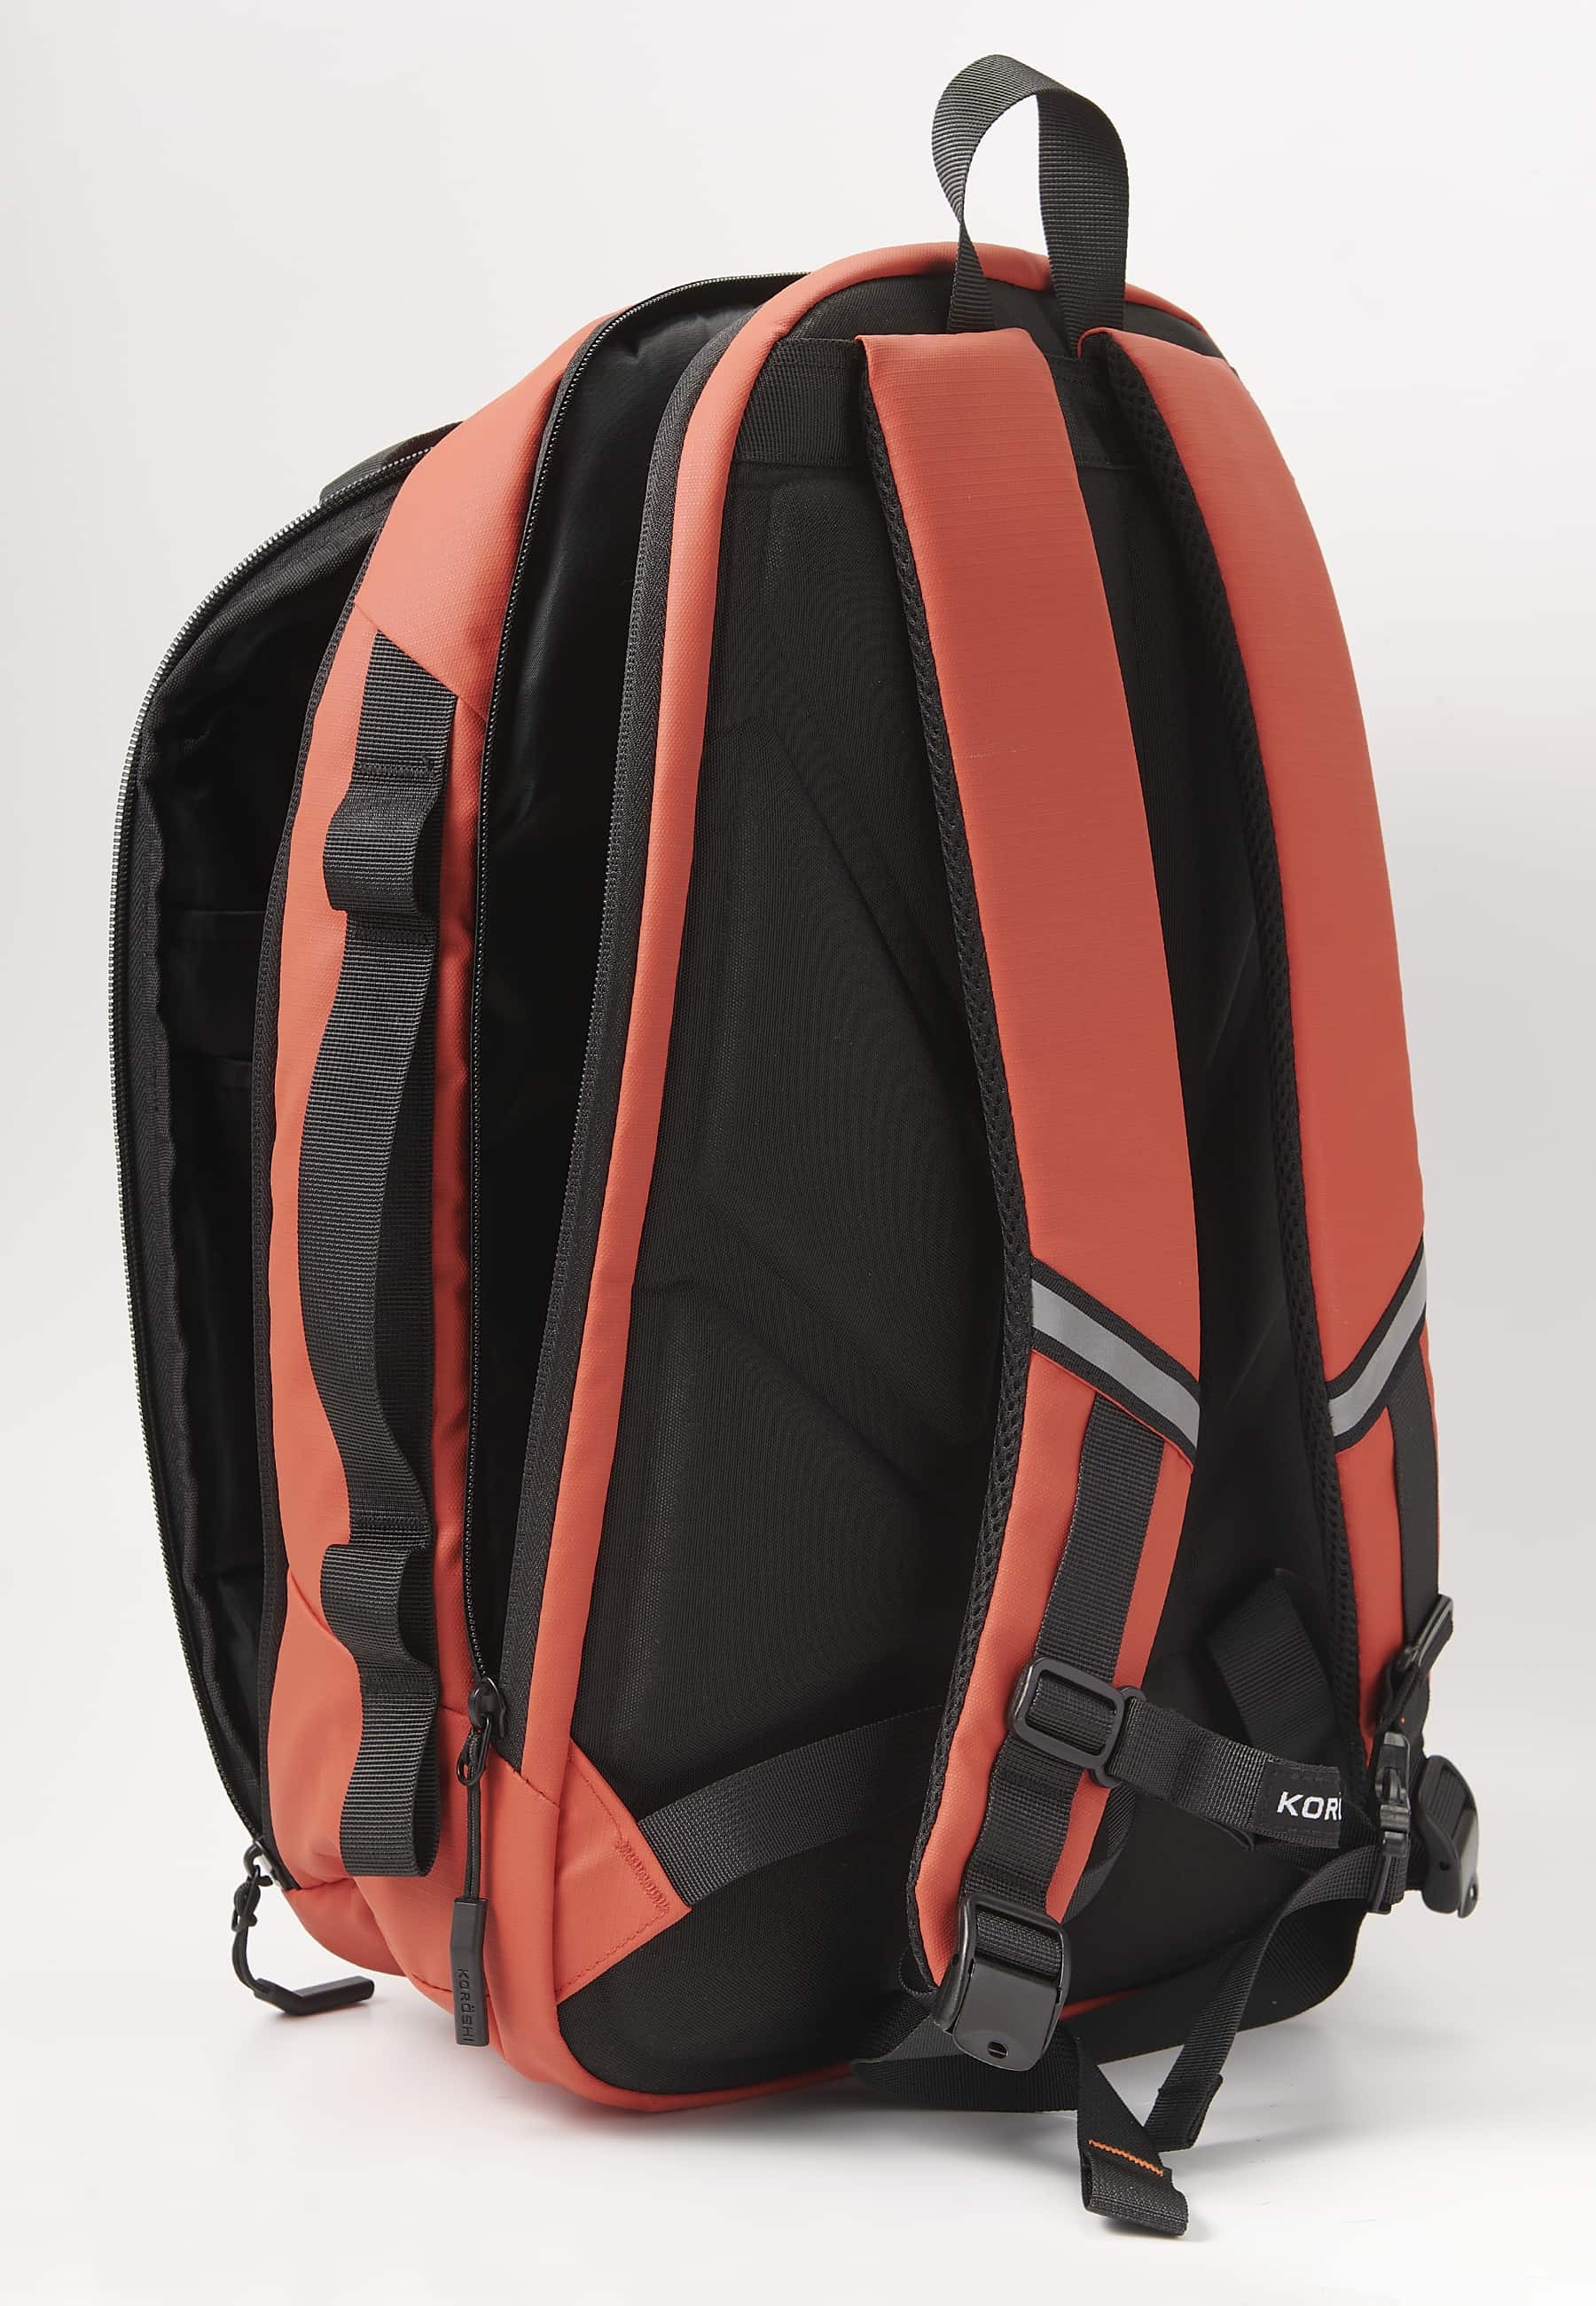 Koröshi-Rucksack mit zwei Reißverschlussfächern, eines für einen Laptop, und verstellbaren Trägern in Rot